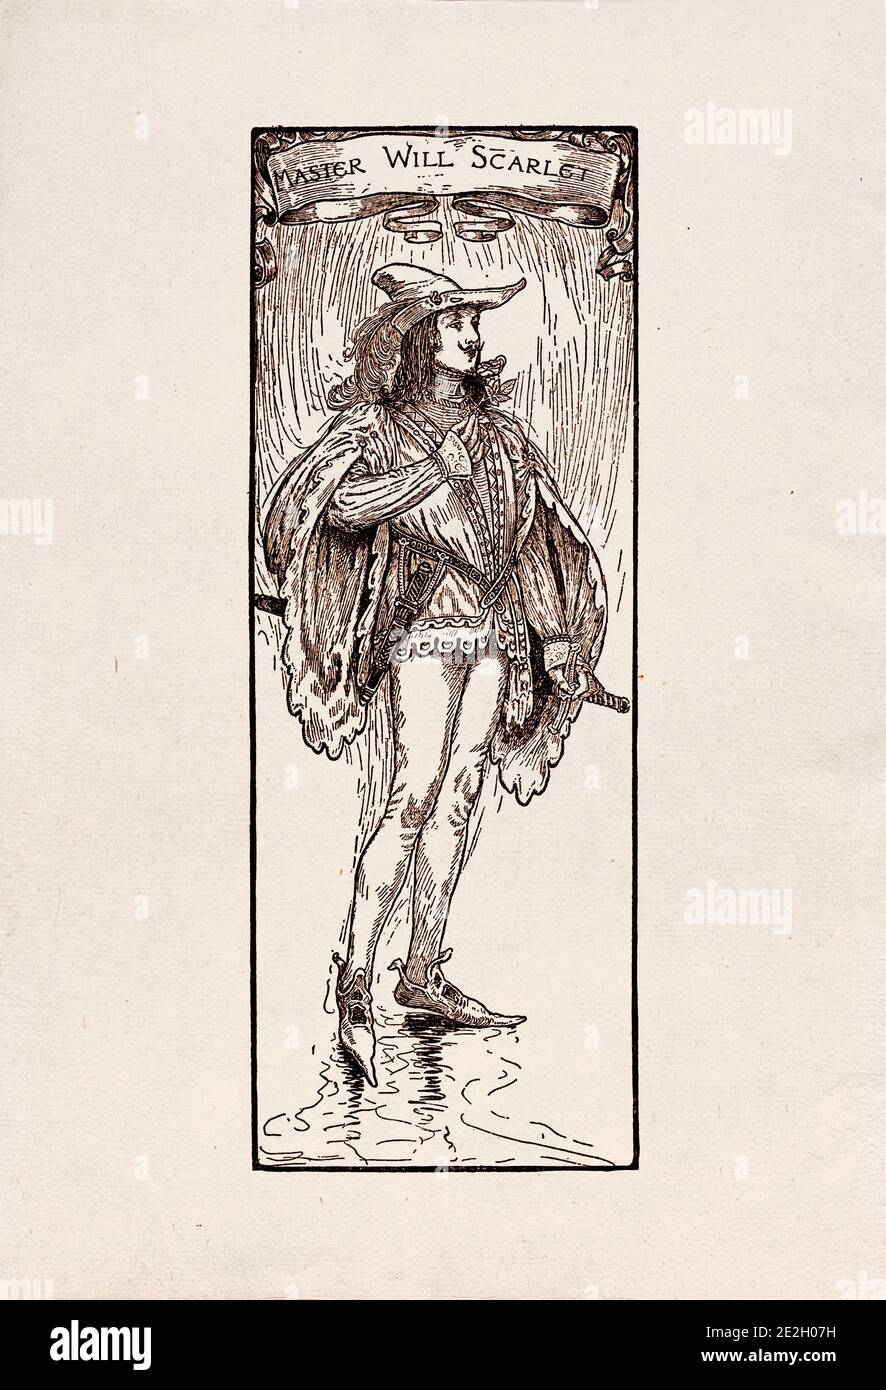 Antike Gravierung von literarischen Figuren aus der englischen Folklore aus den Robin Hood Legenden. Master Will Scarlet. Von Louis Rhead. 1912 Stockfoto